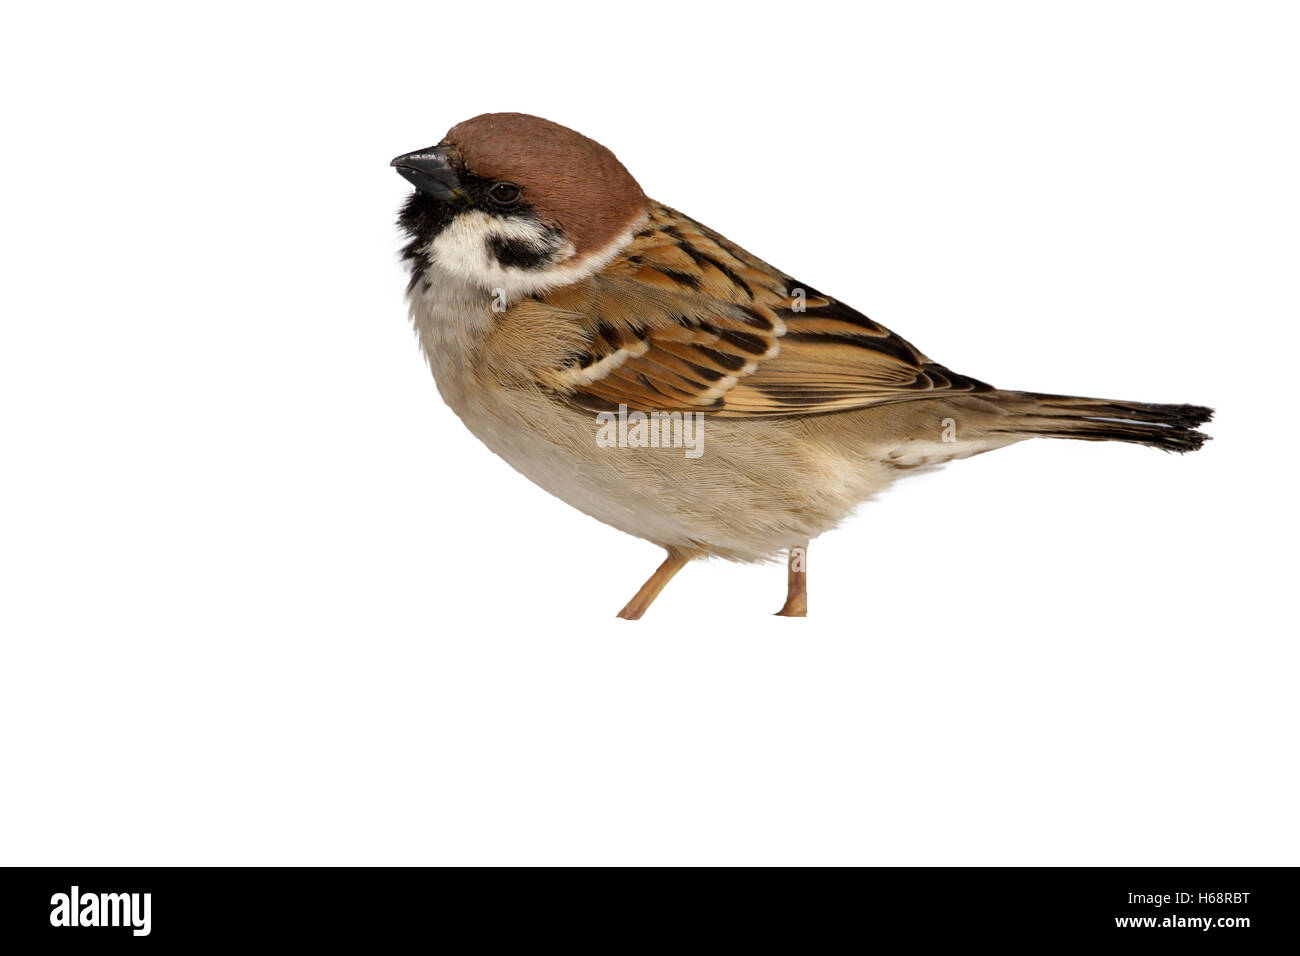 Tree sparrow, Passer montanus, Japan, winter Stock Photo